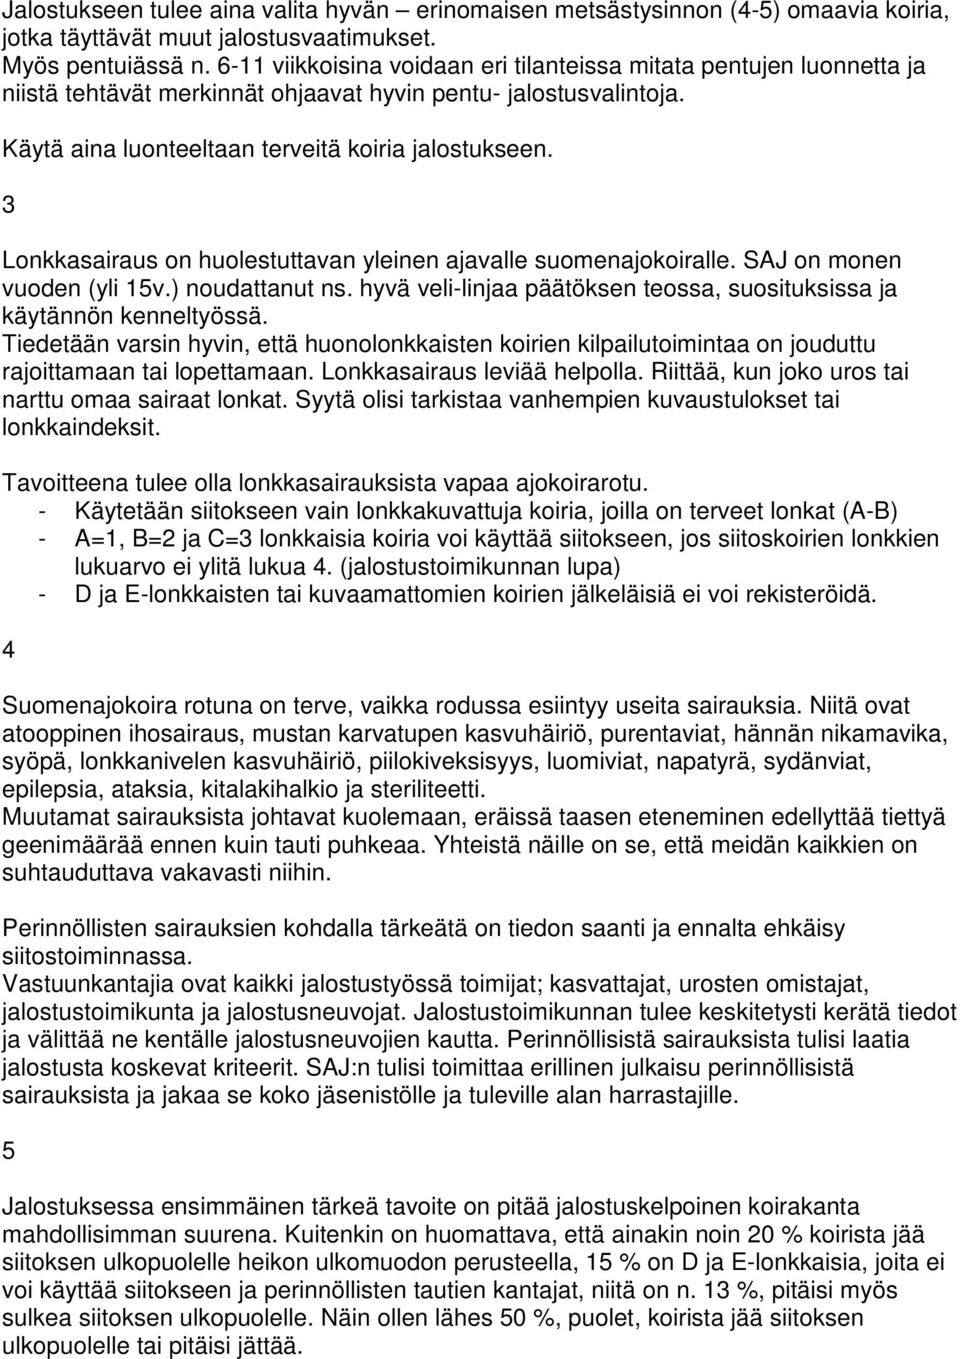 3 Lonkkasairaus on huolestuttavan yleinen ajavalle suomenajokoiralle. SAJ on monen vuoden (yli 15v.) noudattanut ns. hyvä veli-linjaa päätöksen teossa, suosituksissa ja käytännön kenneltyössä.